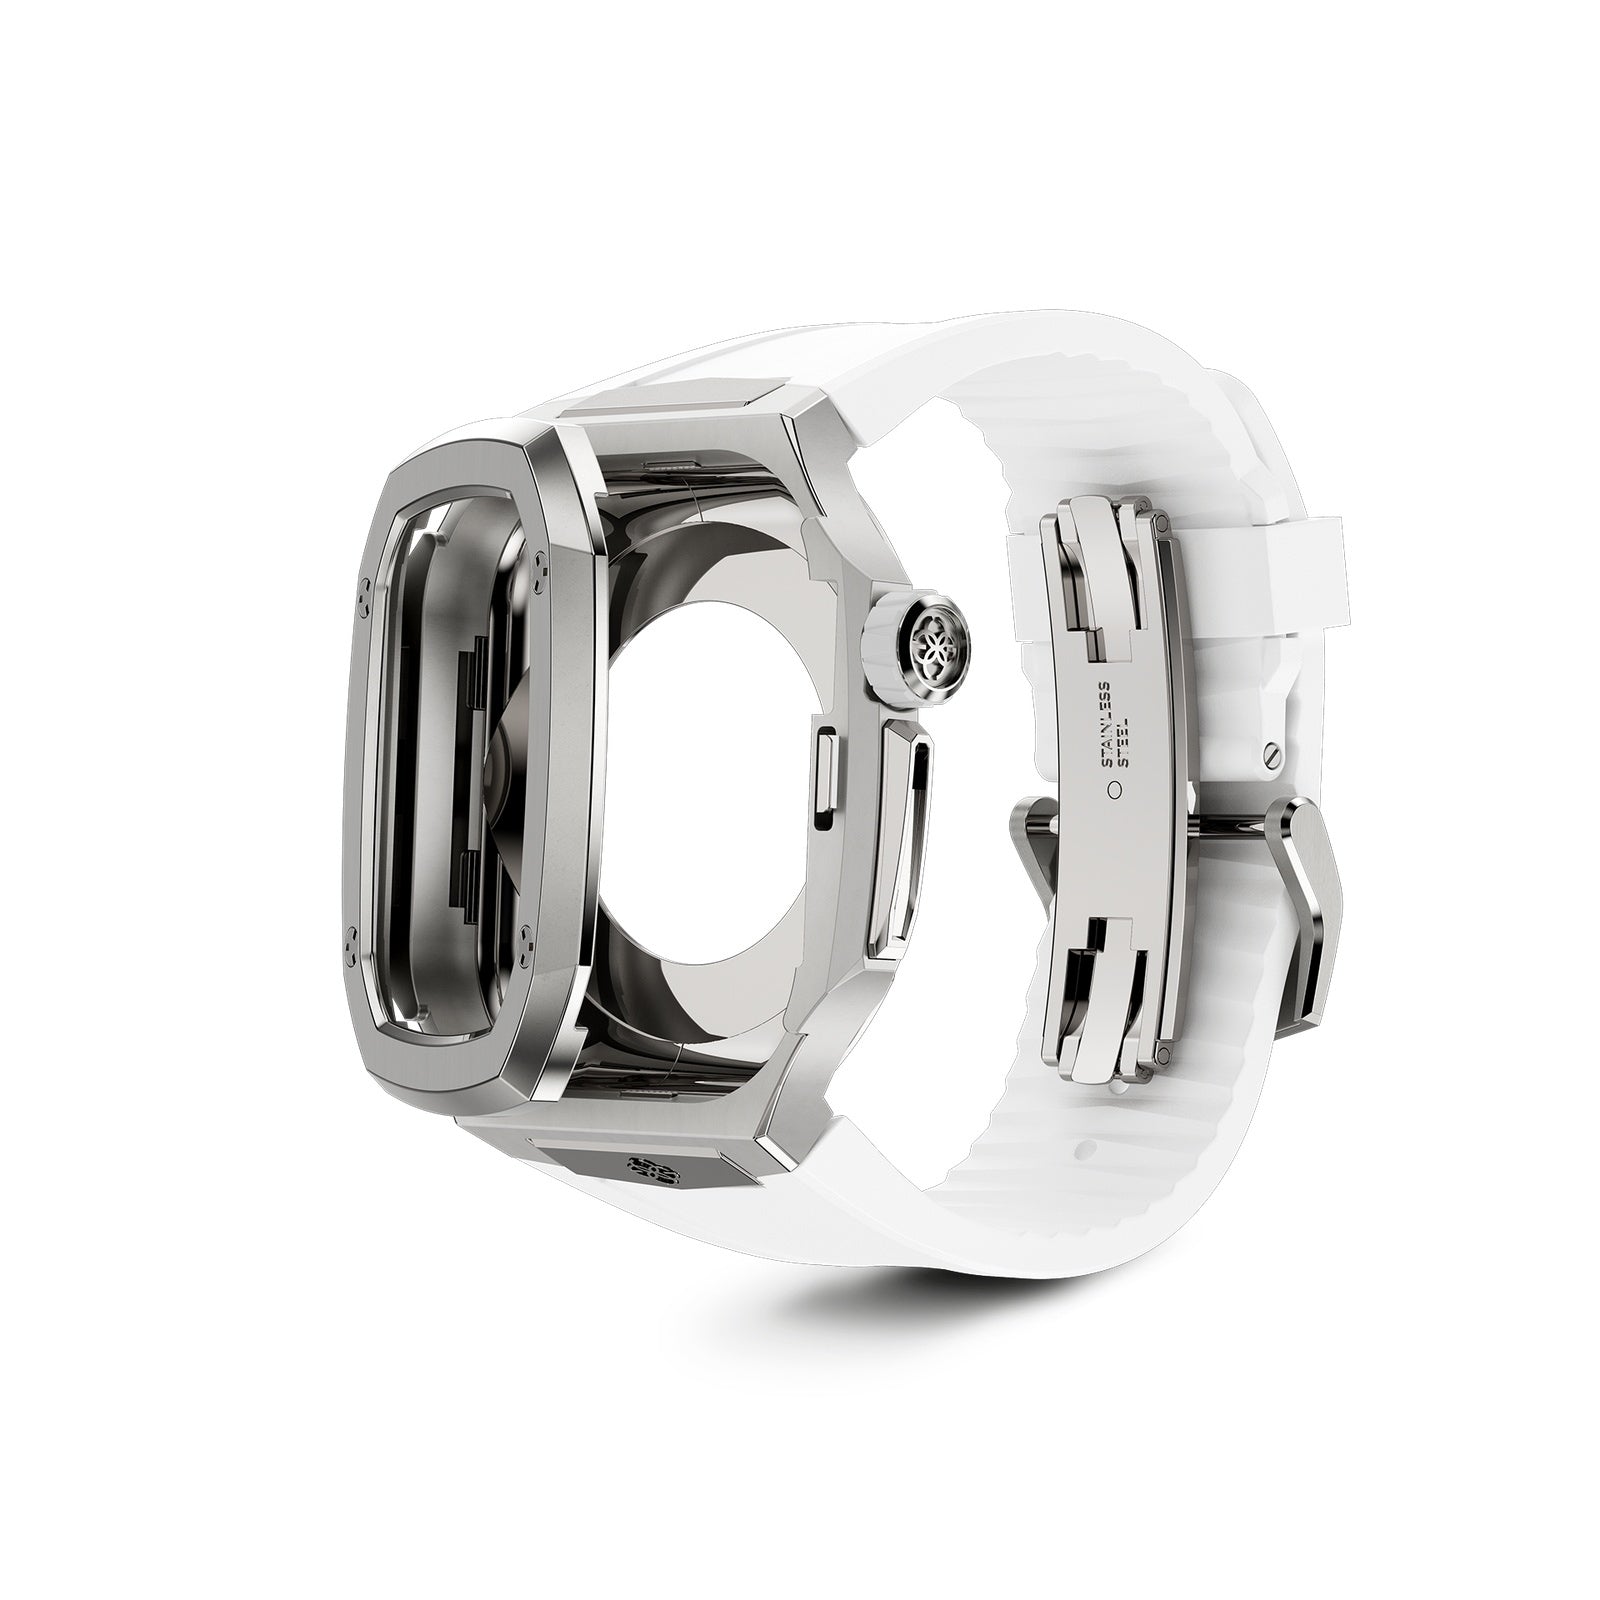 Apple Watch 7 - 9 Case - SPIII41 - Silver